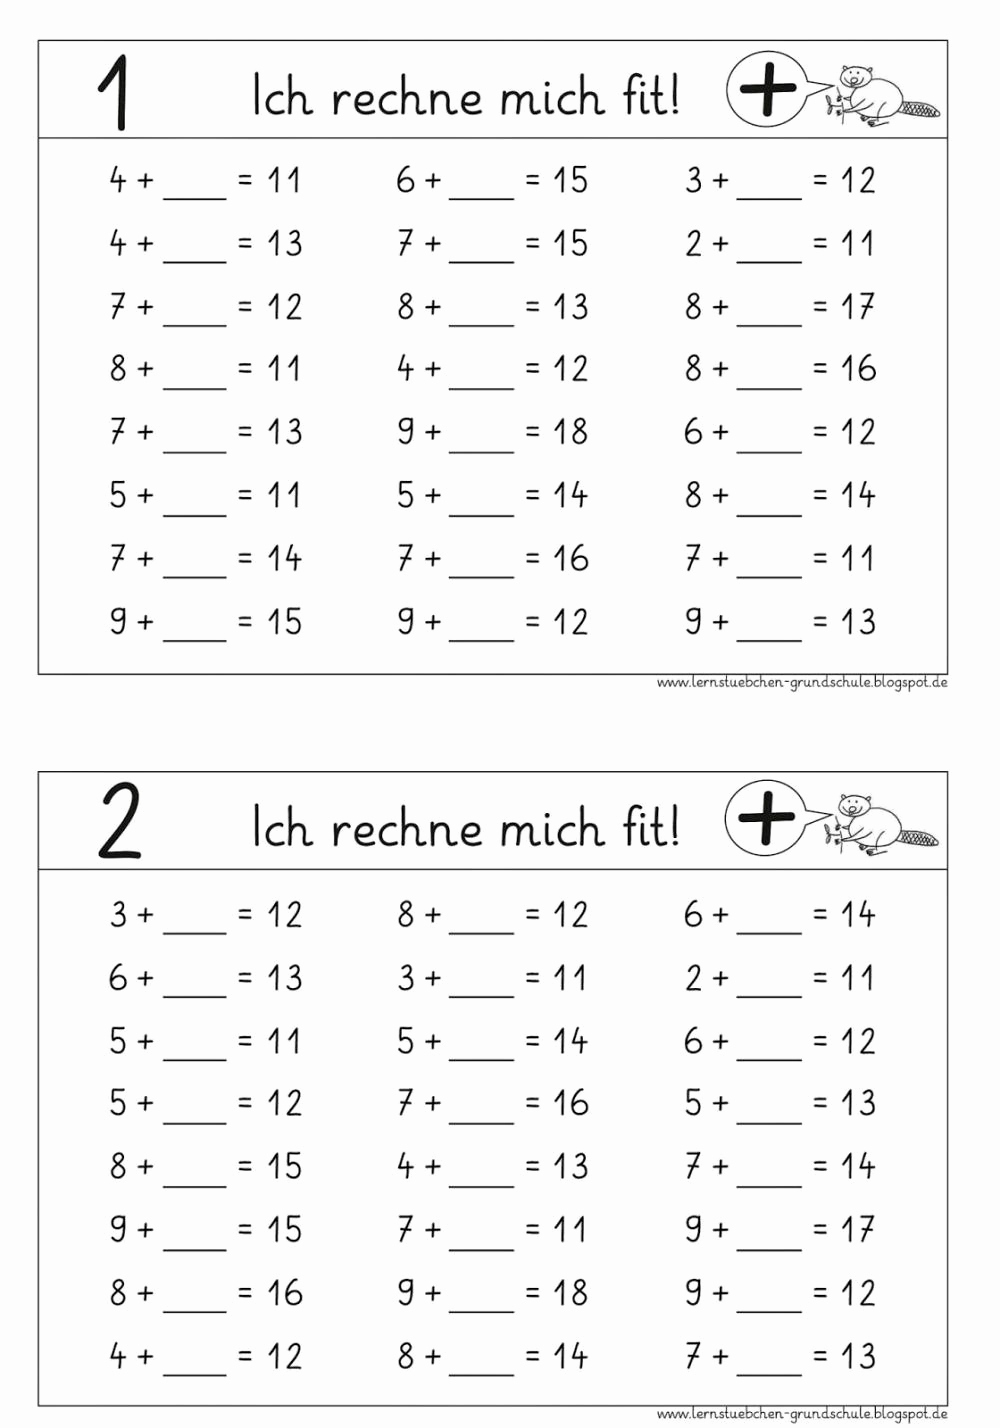 Mathe Übungen Klasse 1 Zum Ausdrucken - kinderbilder ...